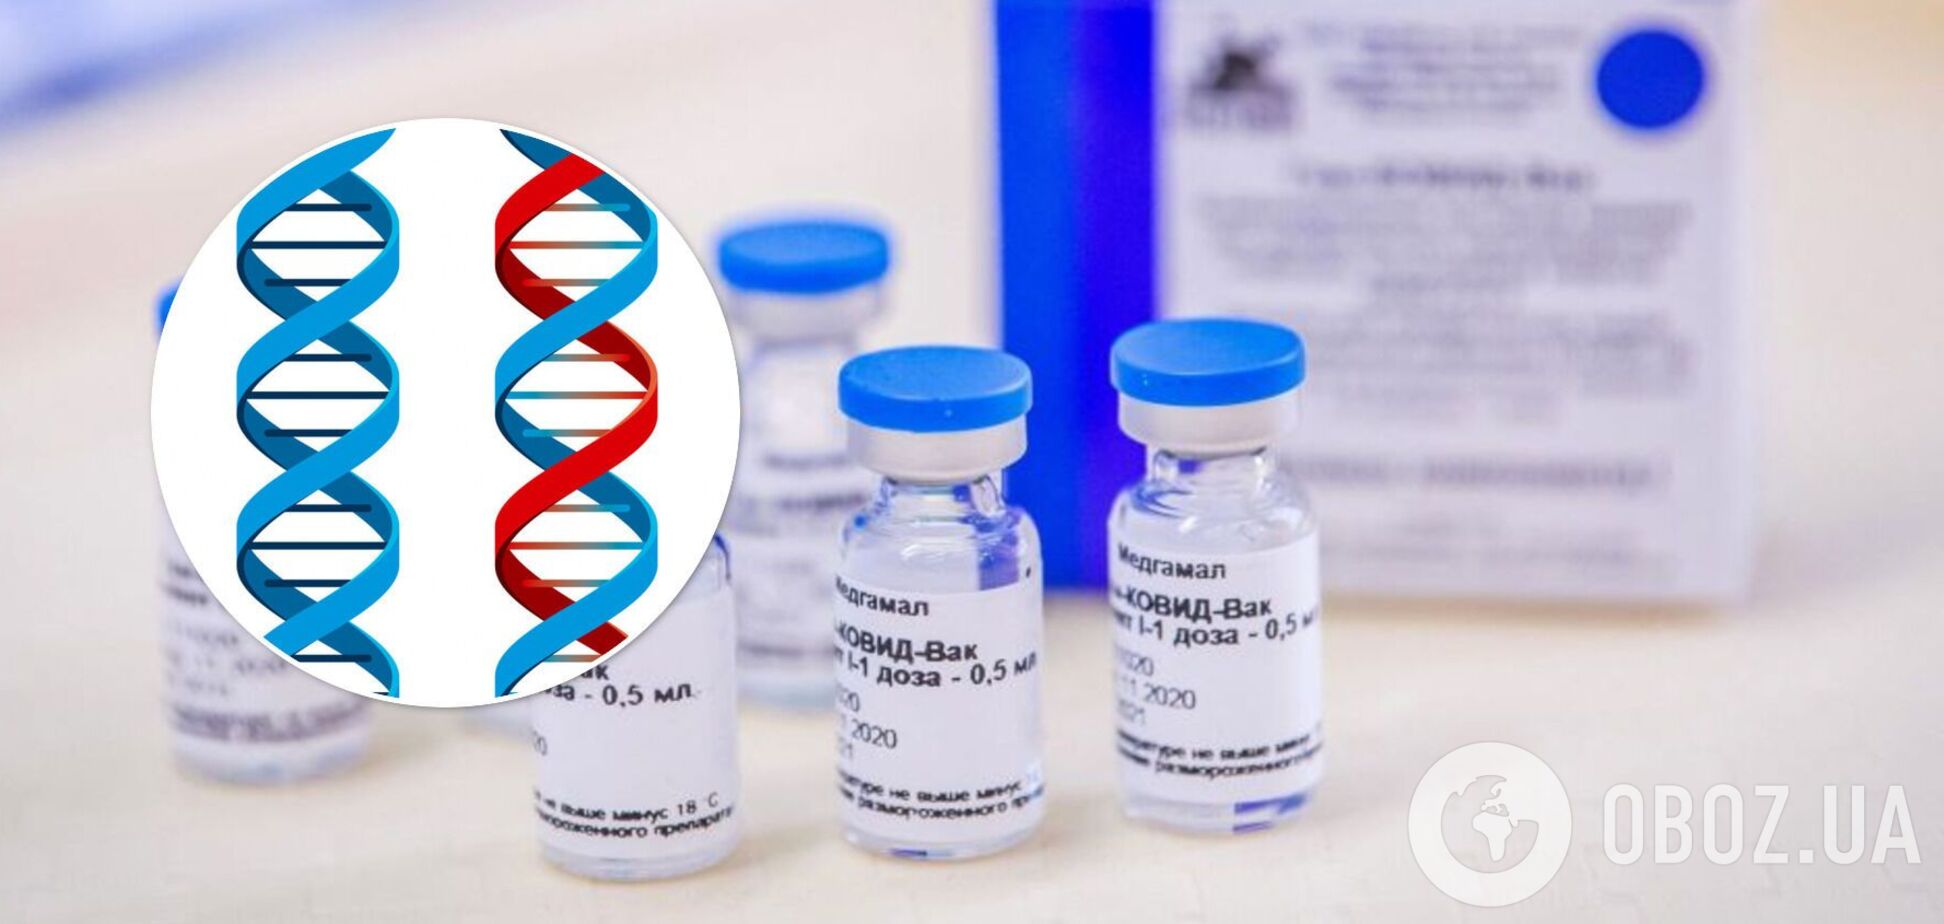 Вакцина от коронавируса и ДНК: профессор опроверг популярный миф